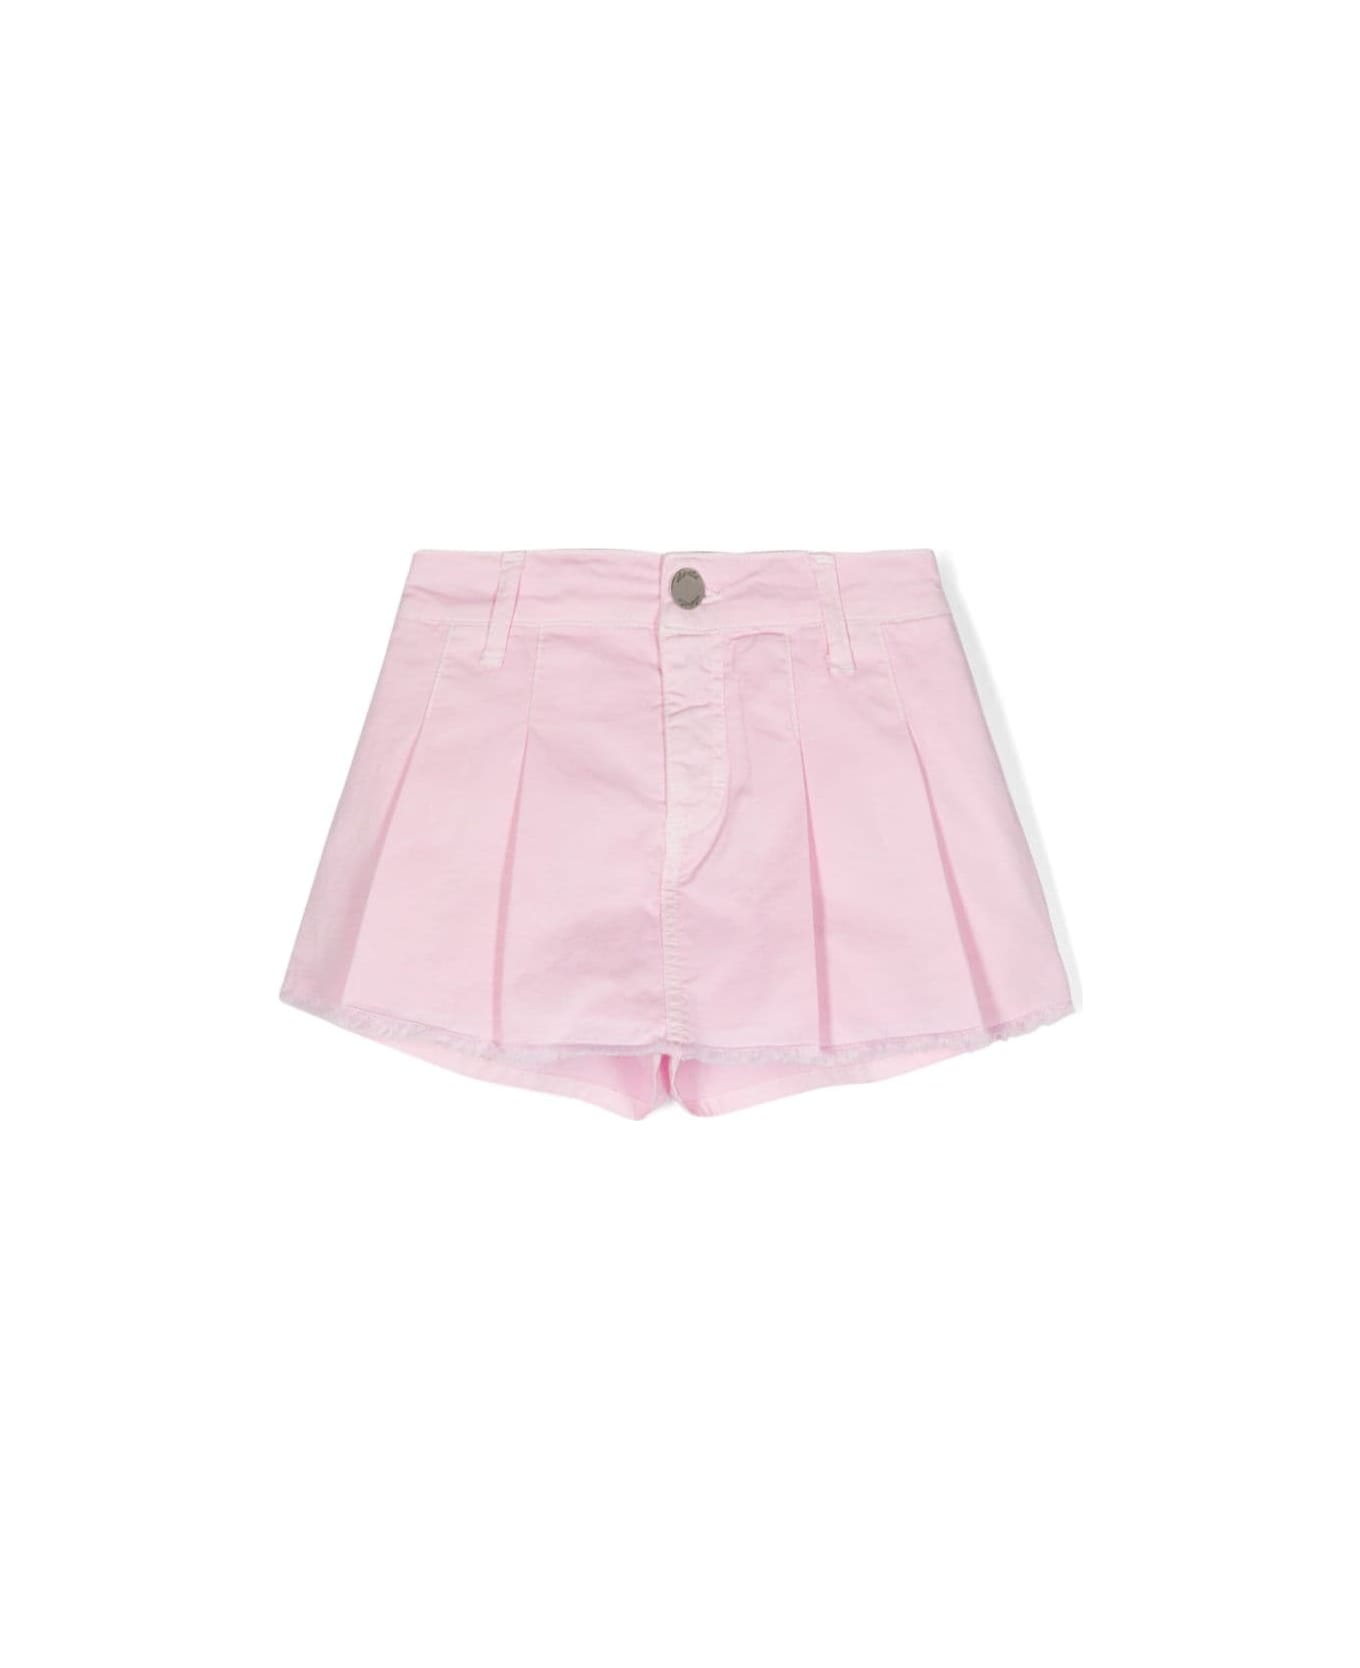 Miss Grant Shorts Rosa - Pink